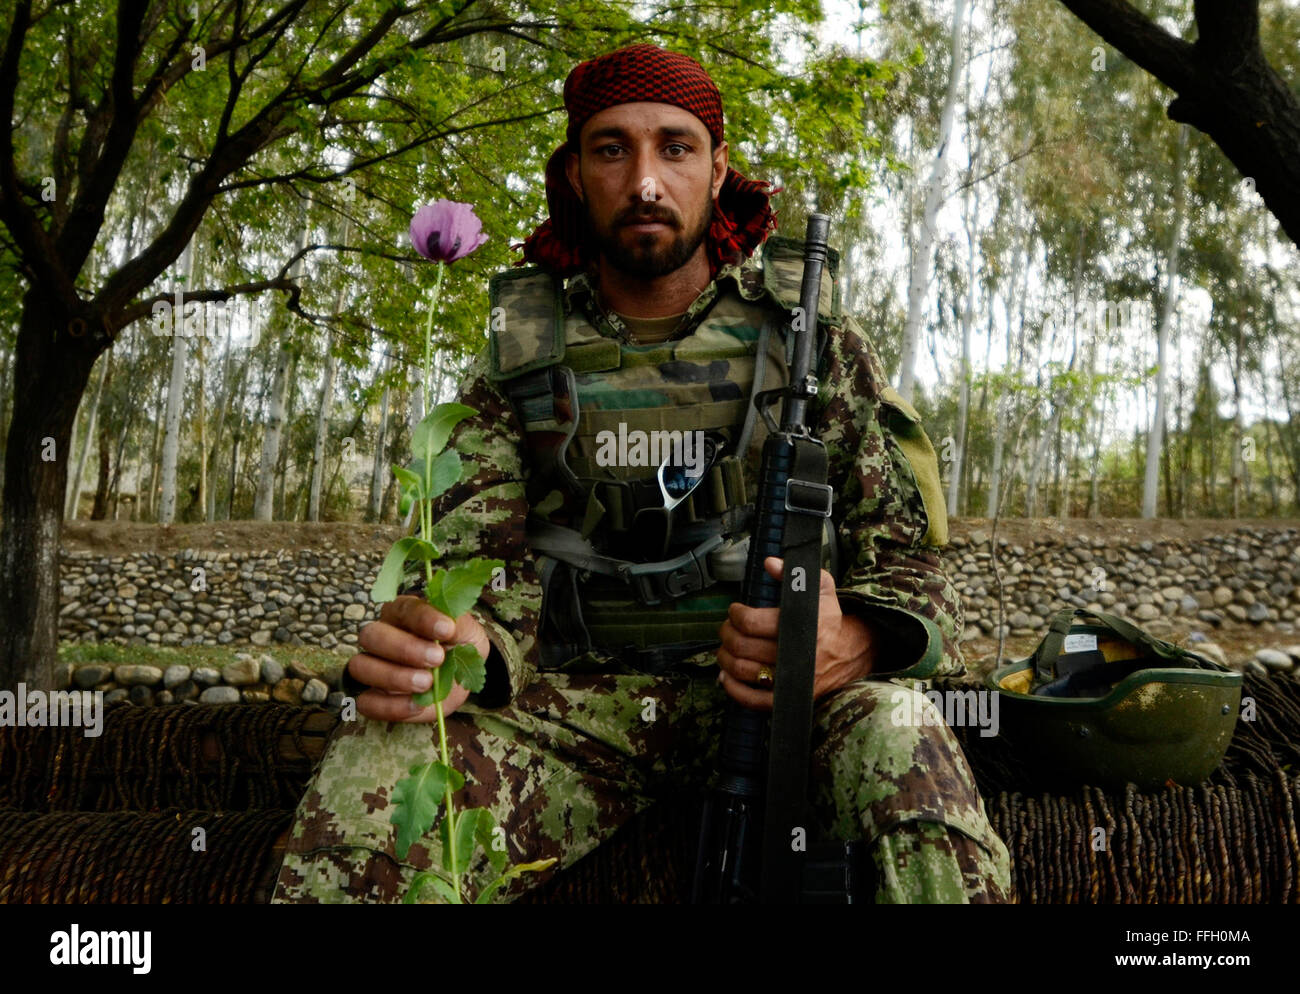 Ein Soldat der afghanischen Nationalarmee posiert mit Mohn in der Nähe des Dorfes Karizonah, Afghanistan. Der Mohn ist eine wichtige Quelle der Finanzierung für extremistische Gruppen in der Taliban-geführten Aufstand in Afghanistan beteiligt. Stockfoto